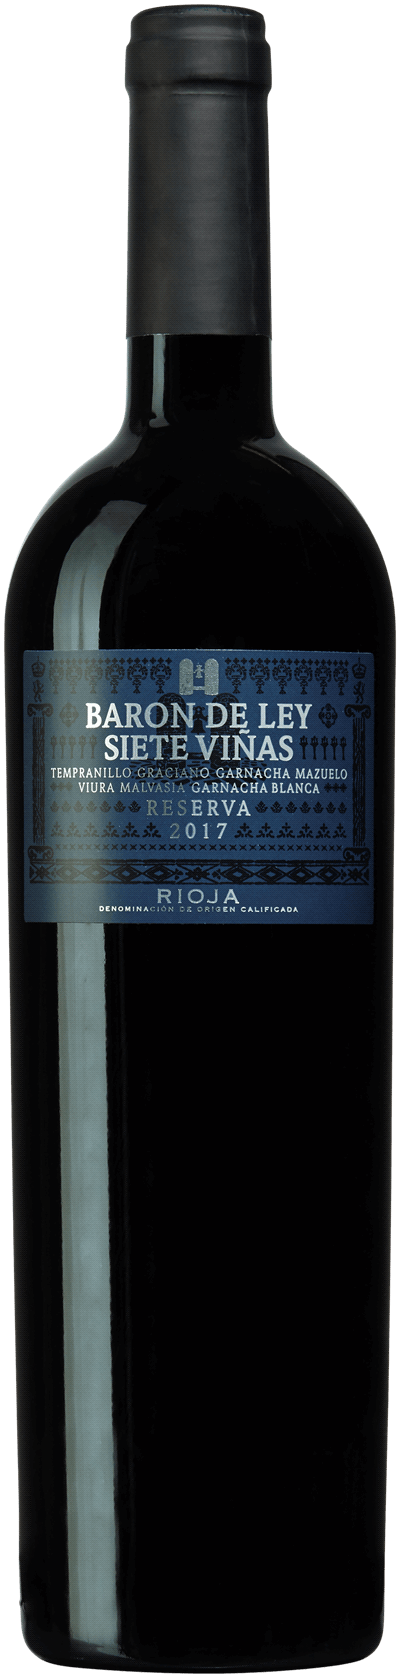 Baron de Ley Siete Viñas Reserva